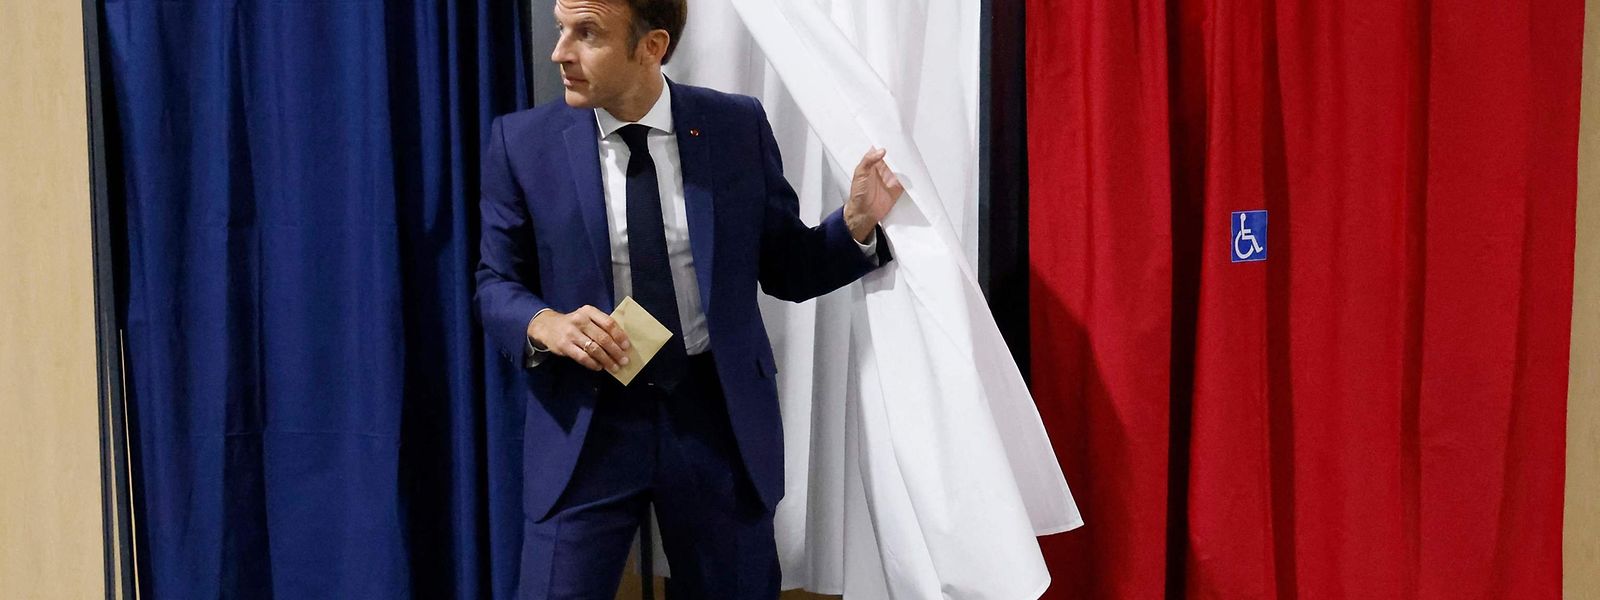 Emmanuel Macron verlässt die Wahlkabine in Le Touquet in Nordfrankreich.